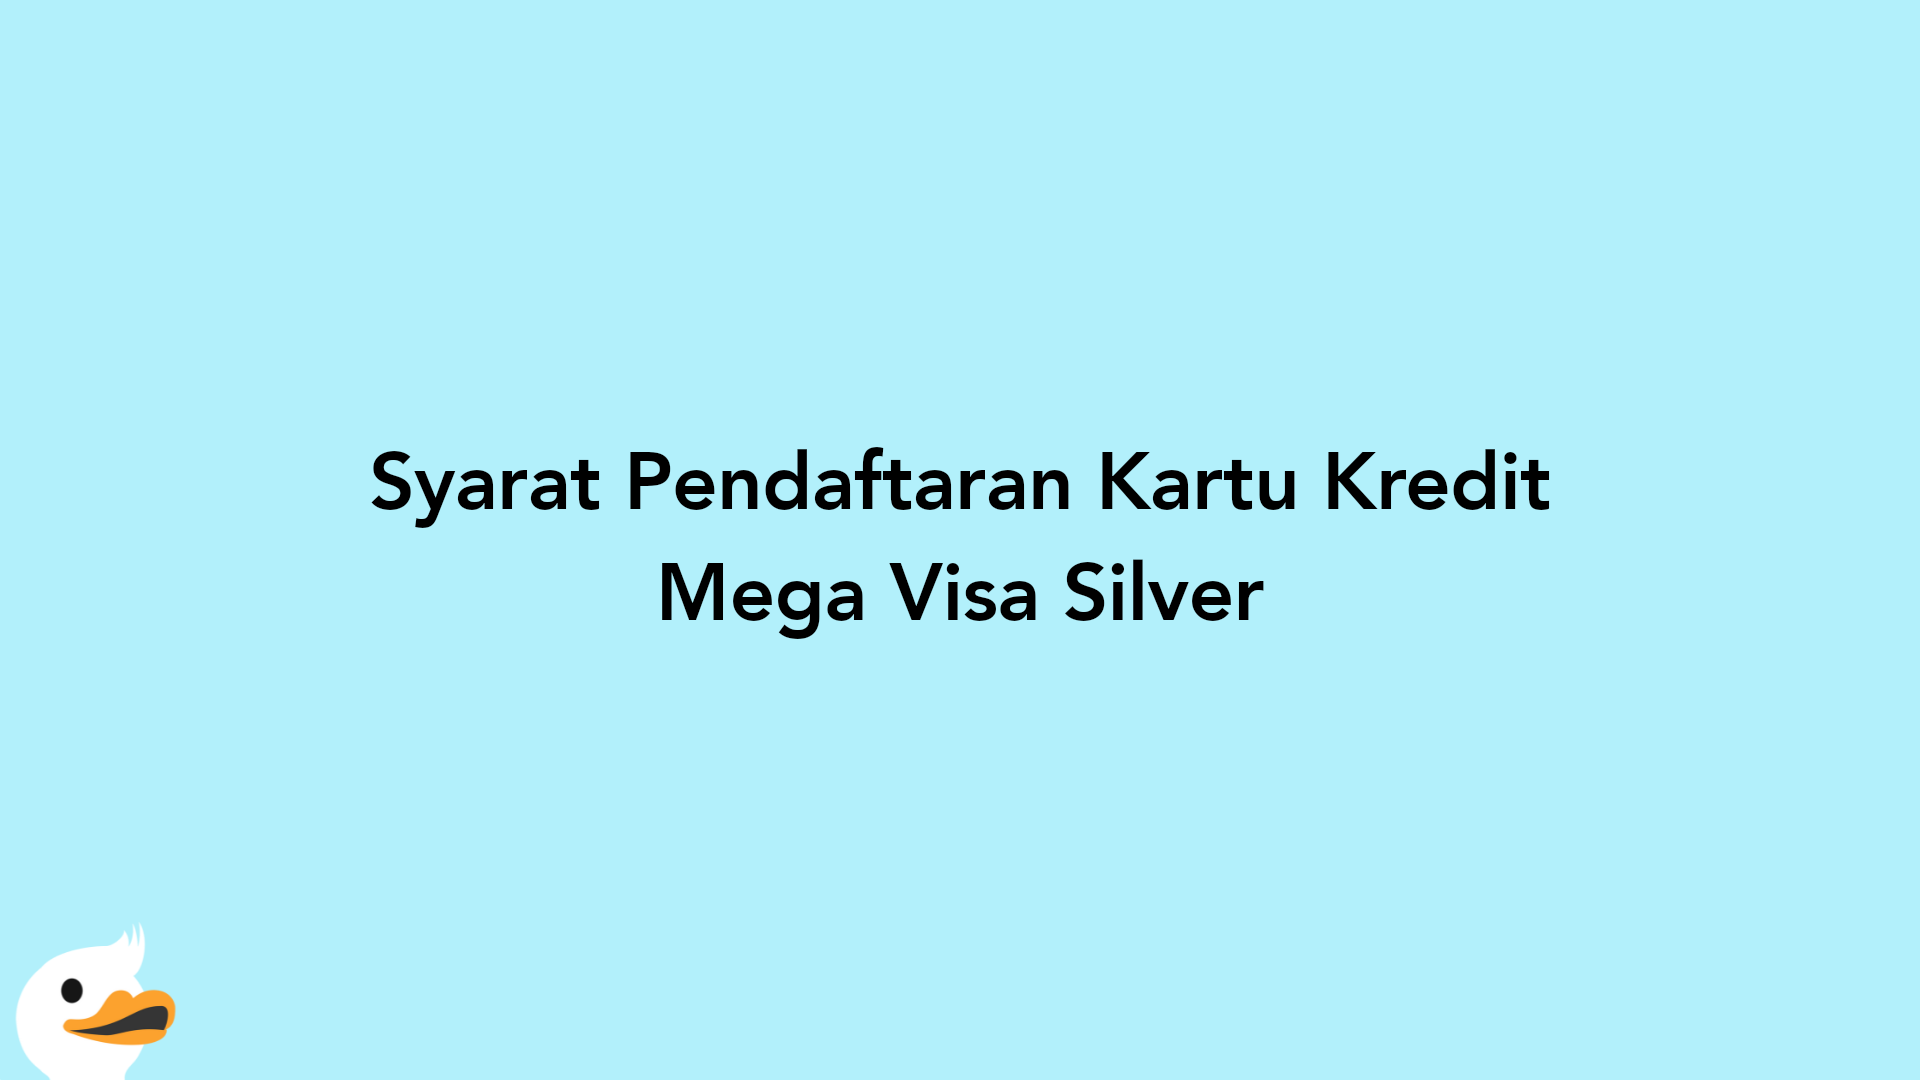 Syarat Pendaftaran Kartu Kredit Mega Visa Silver